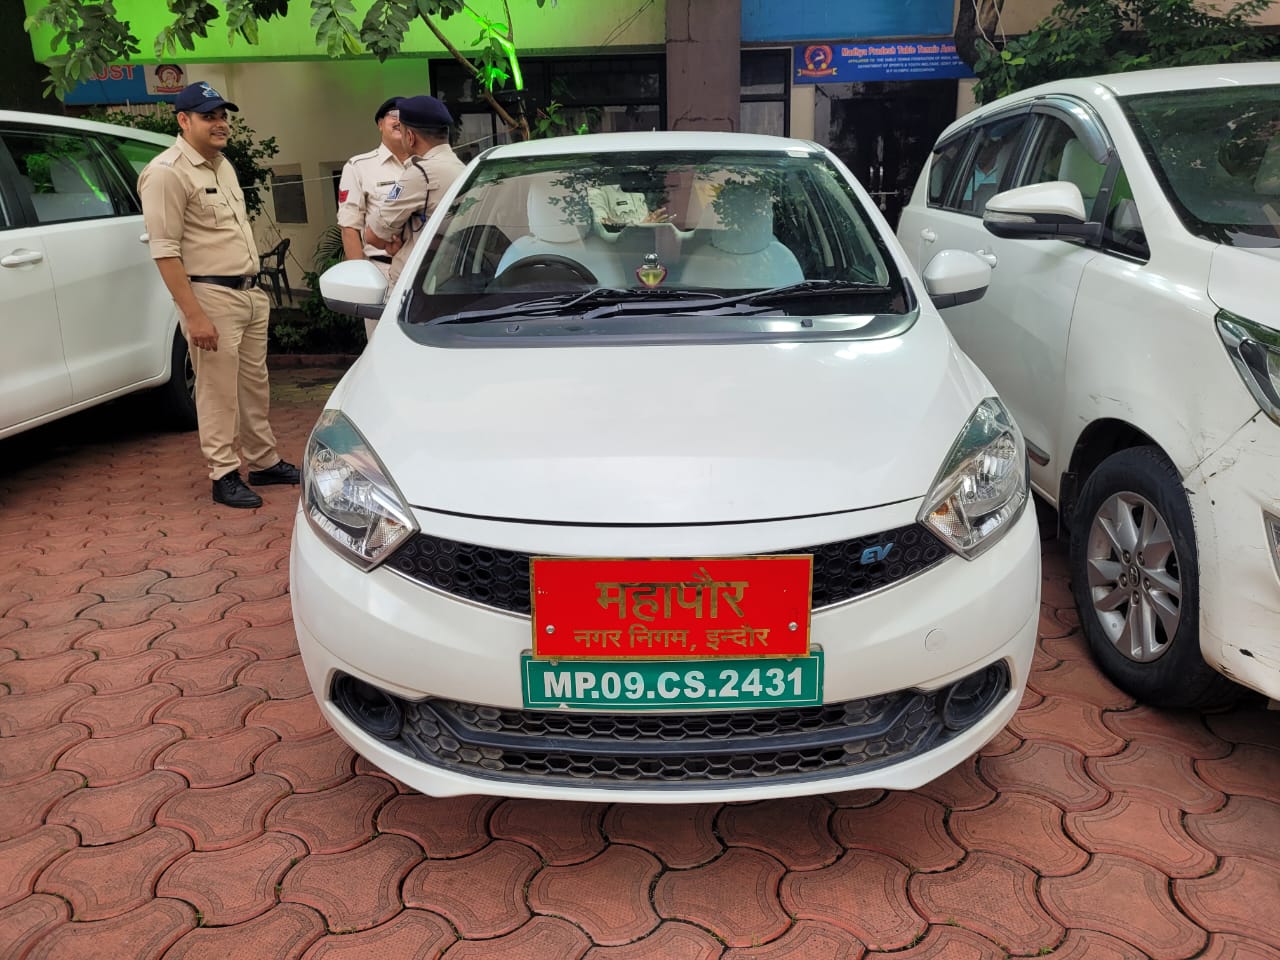 Pushyamitra Bhargava got electric car